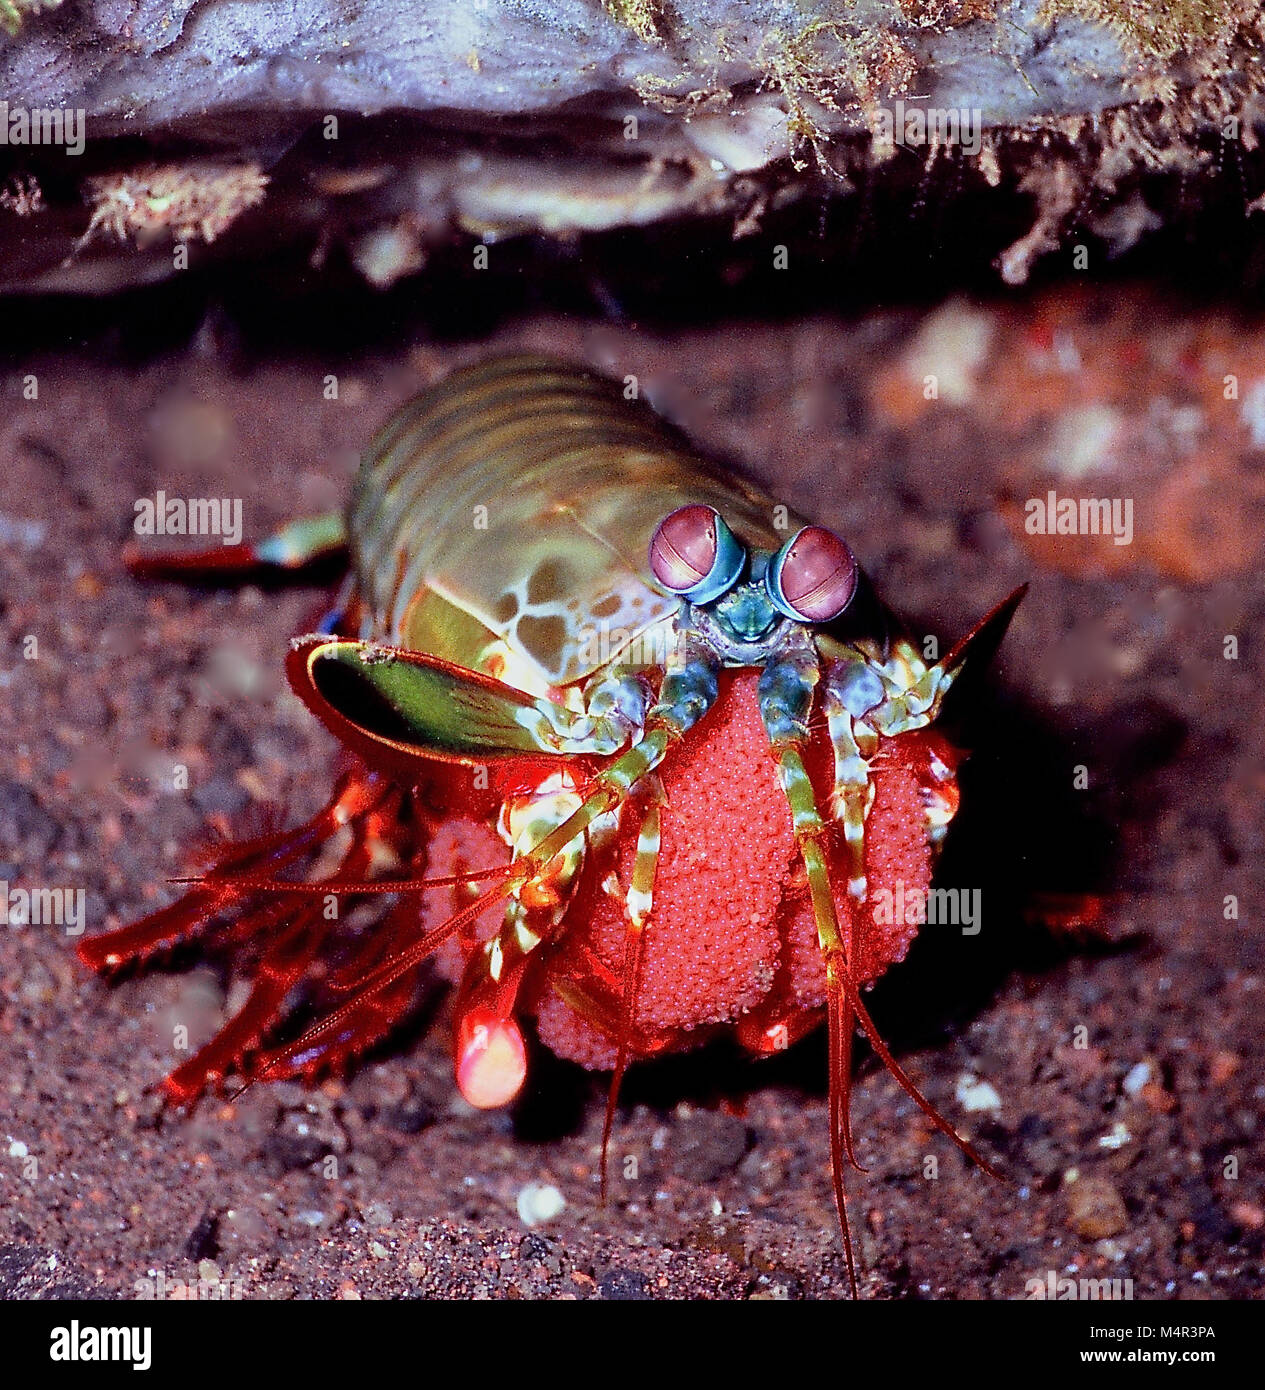 Este peacock camarones mantis (Odontodactylus scyllarus: 12 cms.) llevaba los huevos, que le gustaría proteger, mantener limpio y oxigenan hasta que nacieron. Cabe añadir que las garras en la que ella estaba sosteniendo sus huevos podrían ser utilizados como armas club con uno de los ataques más rápidos en el reino animal; más de 10 metros por segundo. Se han conocido para romper un buzo del dedo. Es más sensato tratar de tocarlos, o mantenerlos en acuarios, ya que están dispuestos a romper el cristal. En cualquier caso, esta persona fue claramente una formidable madre! Fotografiado en aguas de Bali, Indonesia. Foto de stock